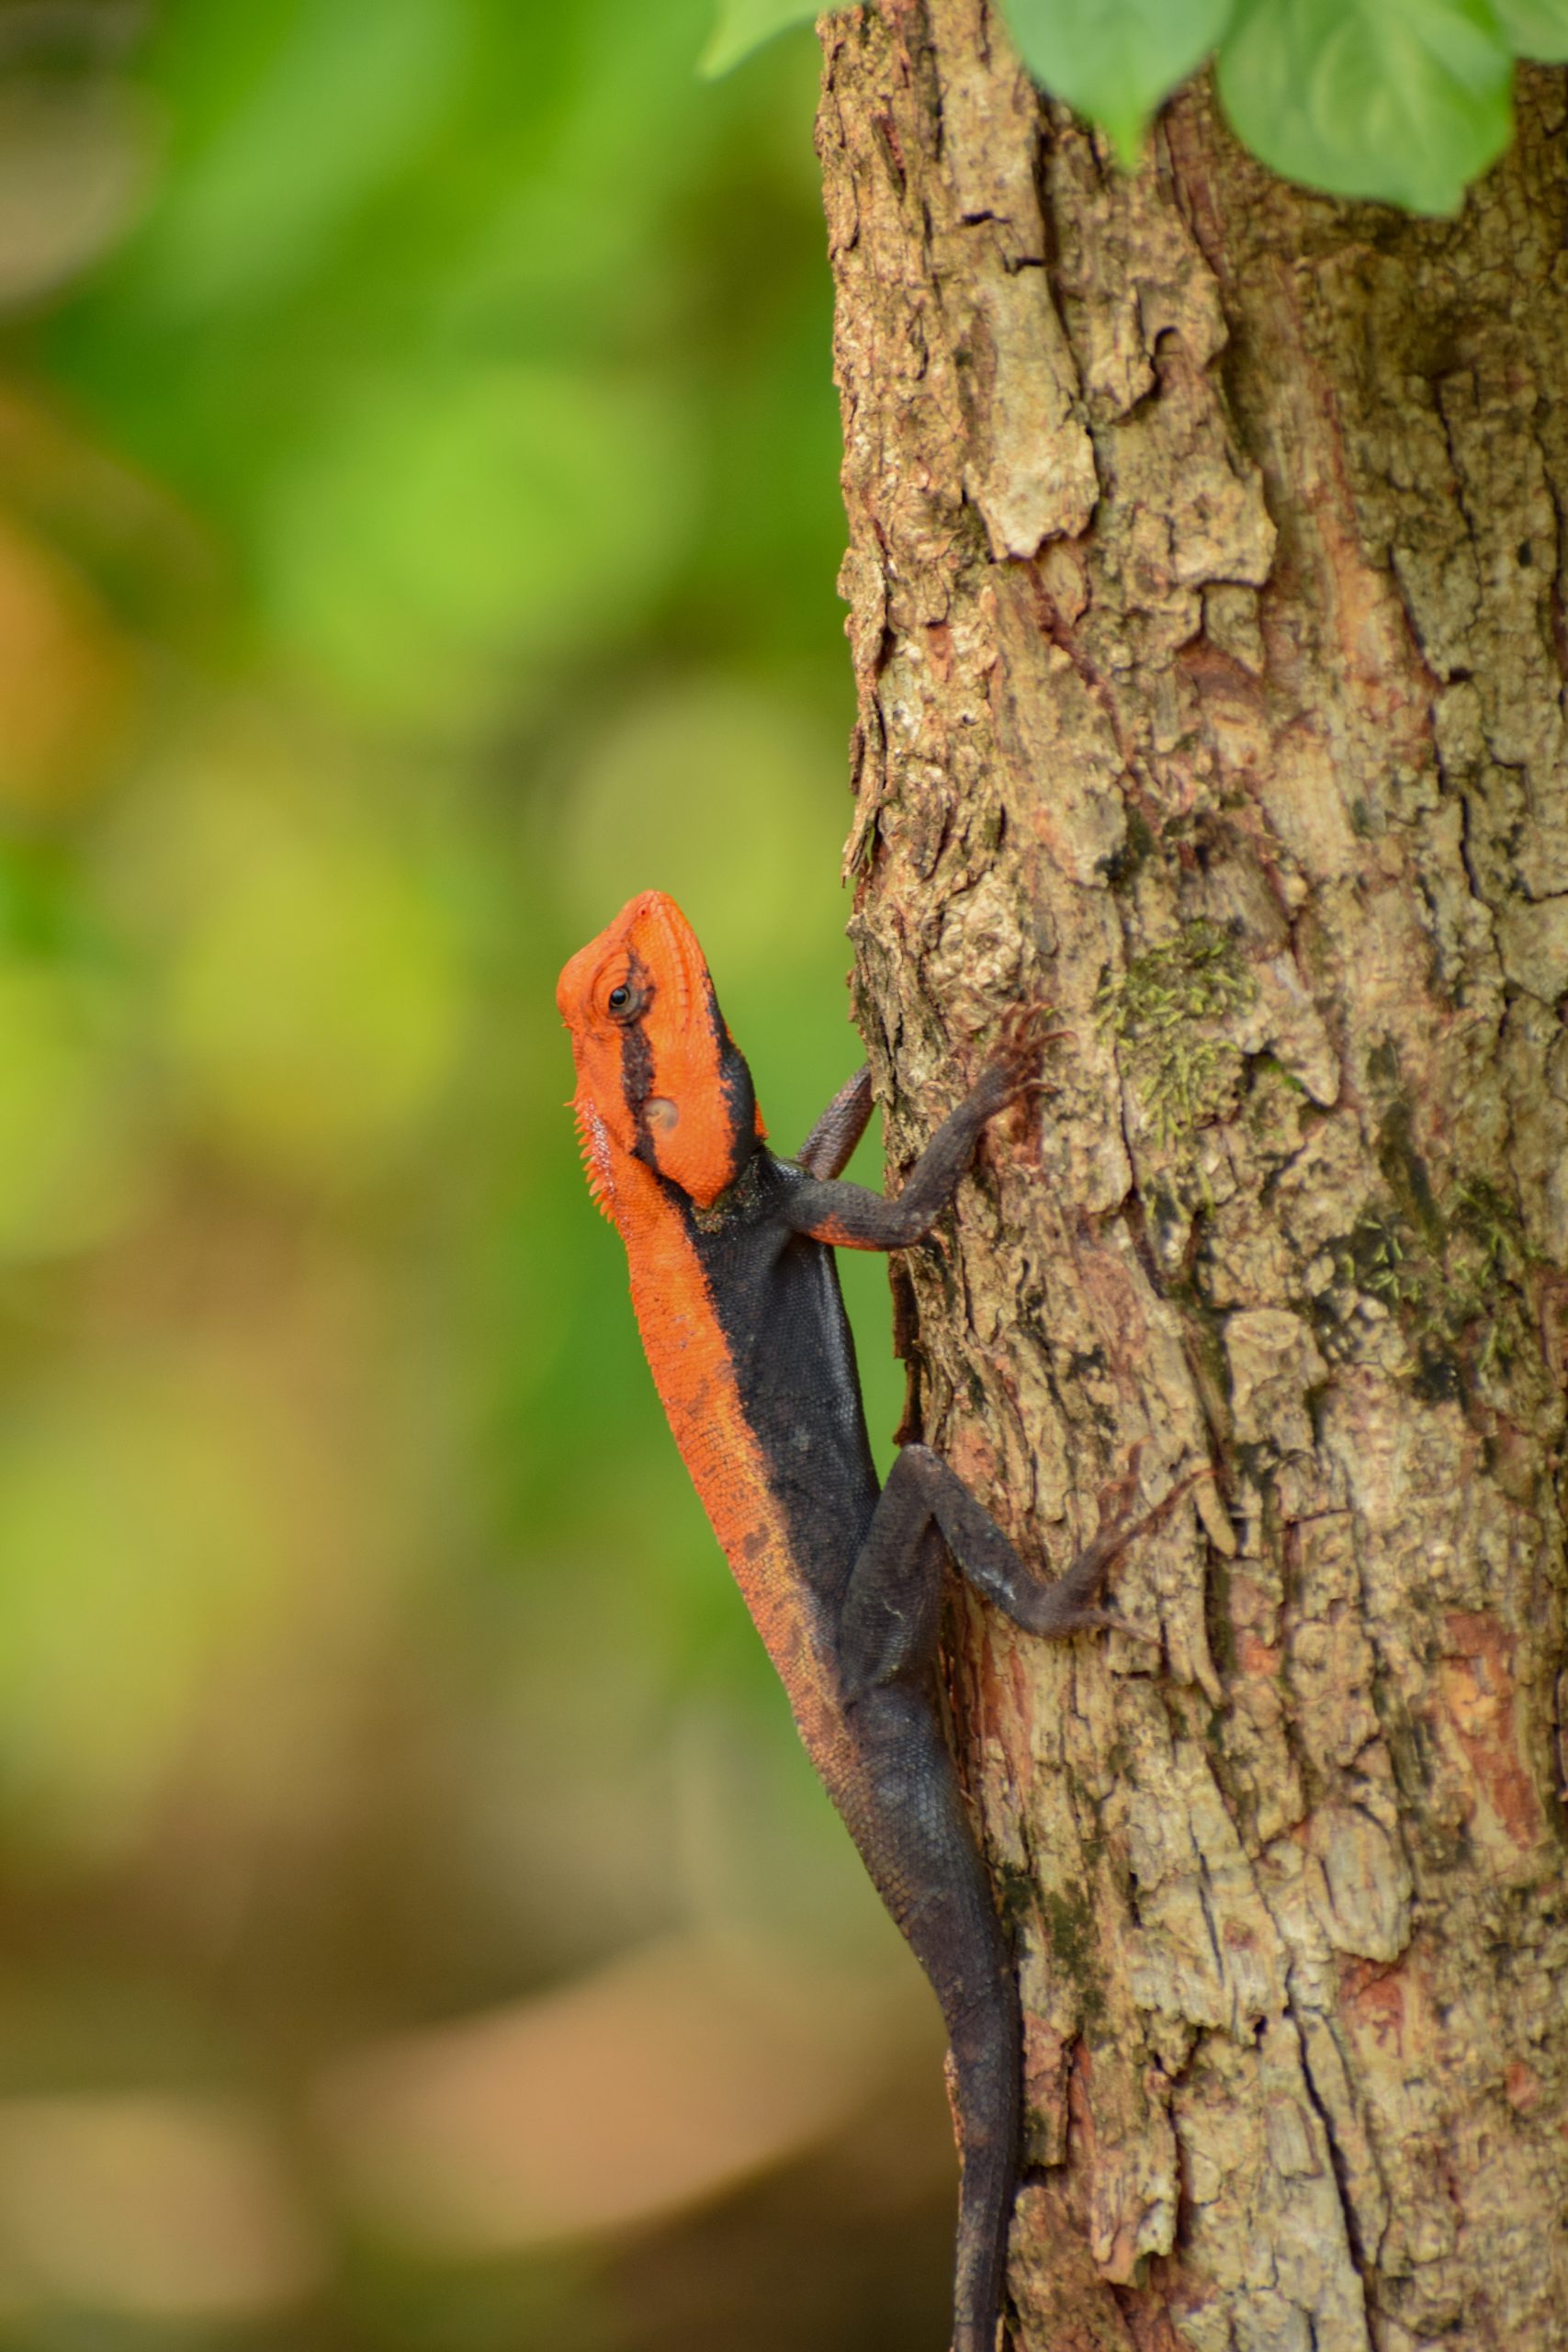 lizard on tree trunk